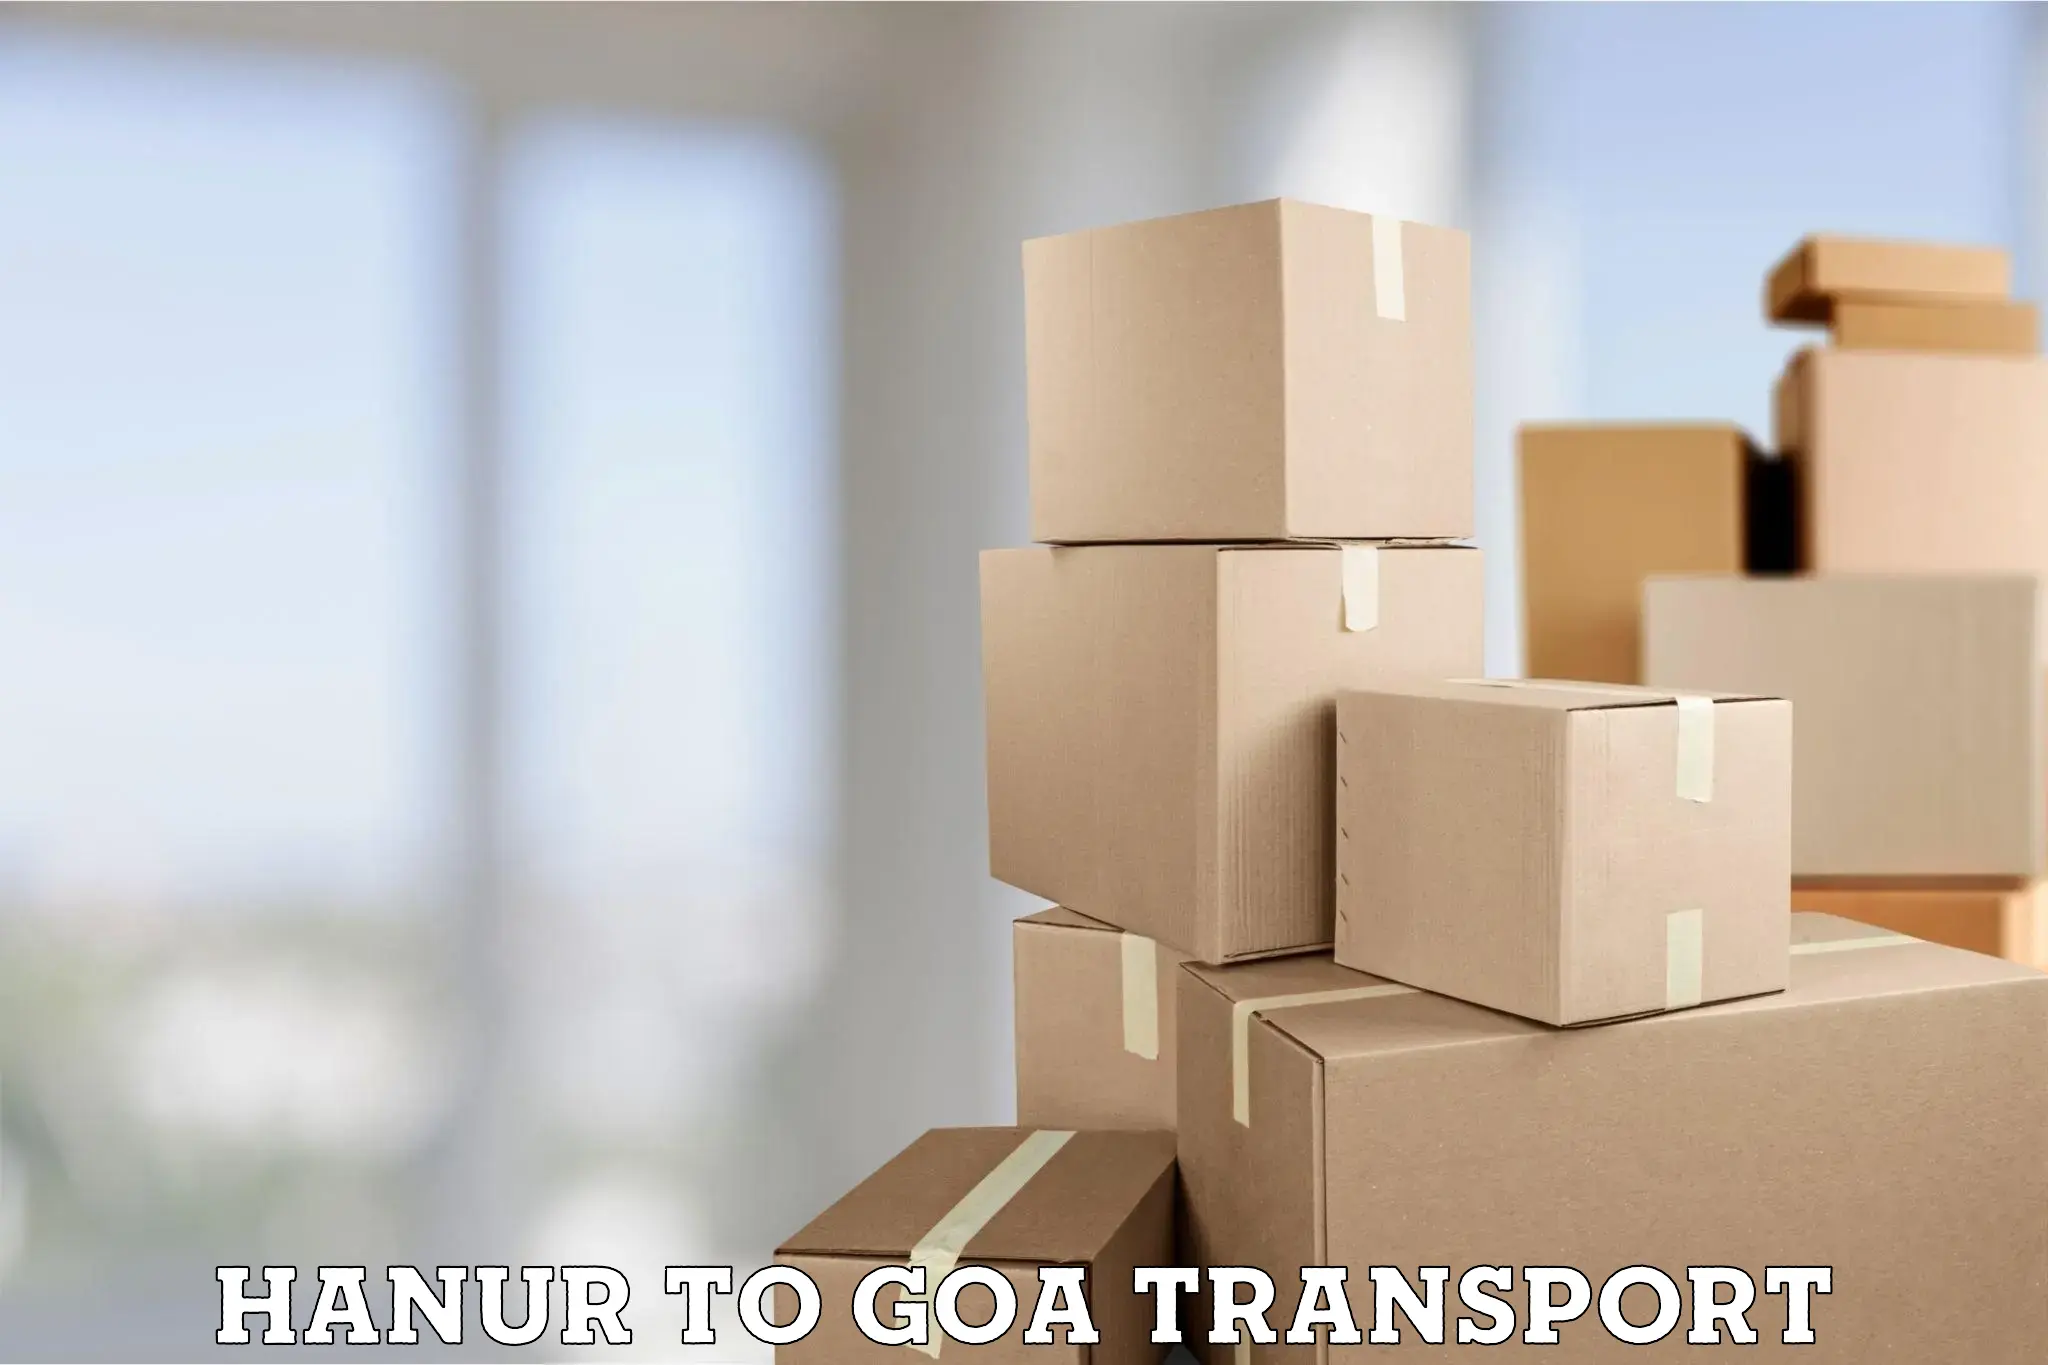 Daily parcel service transport Hanur to Mormugao Port